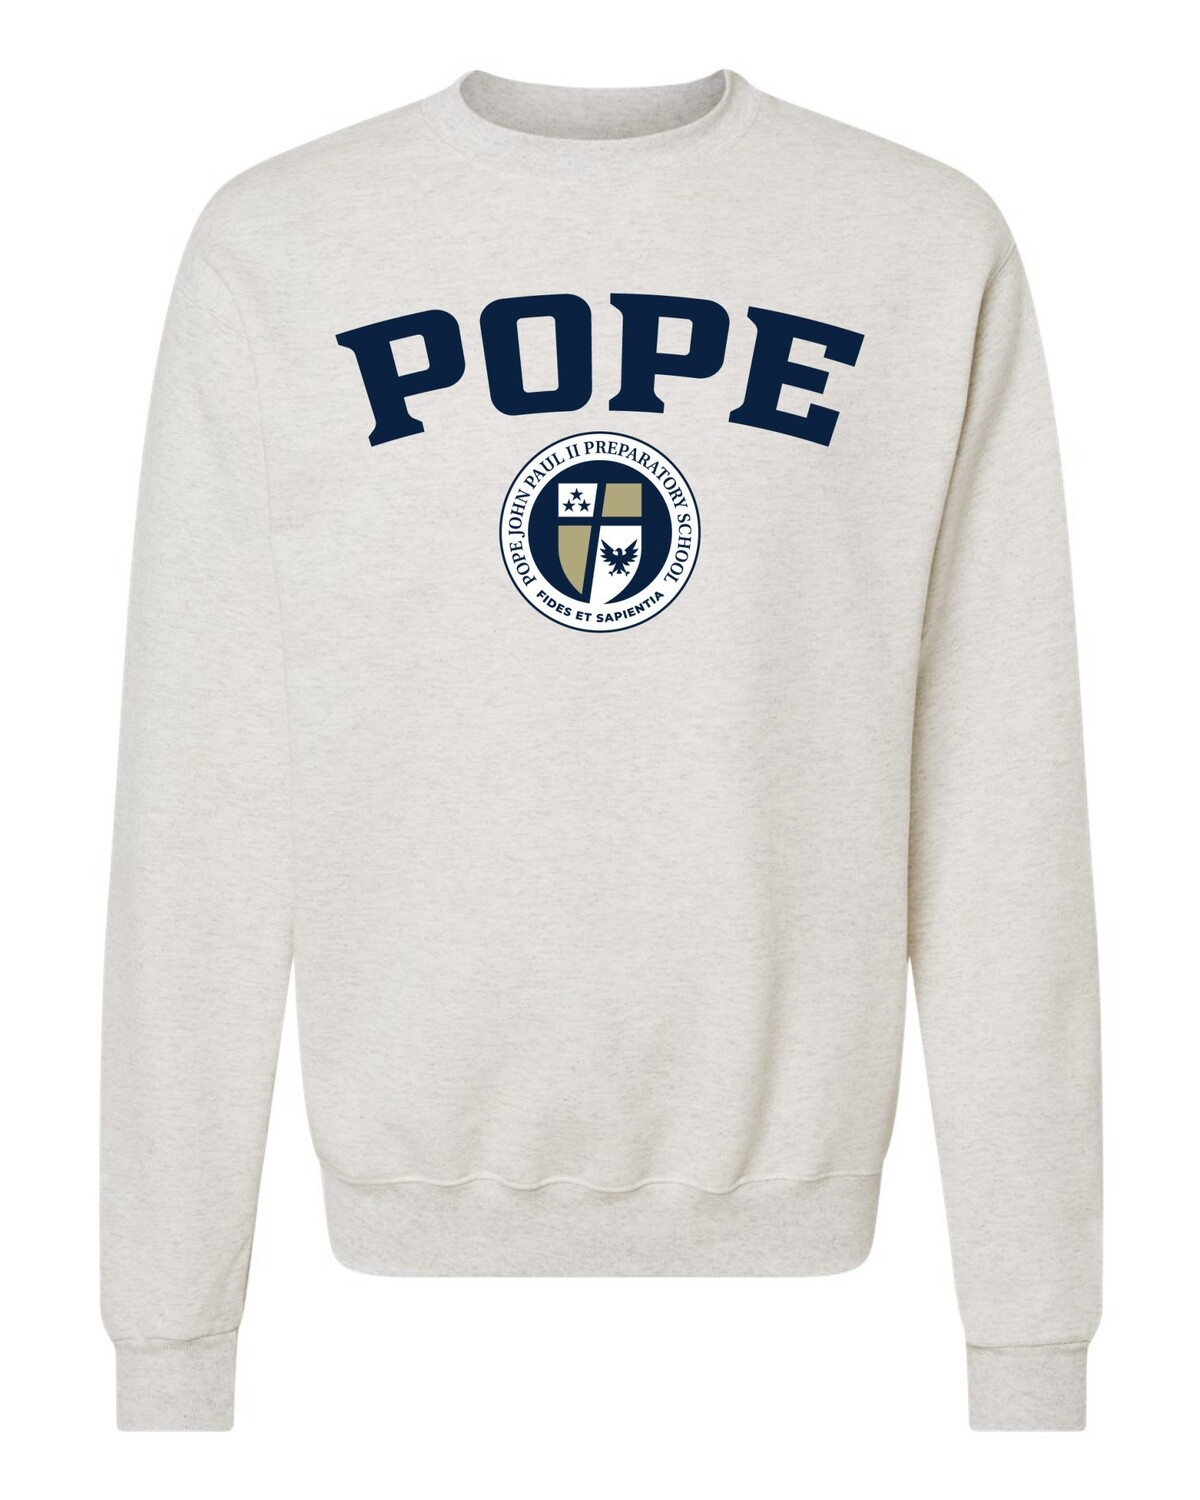 POPE + SEAL Sweatshirt